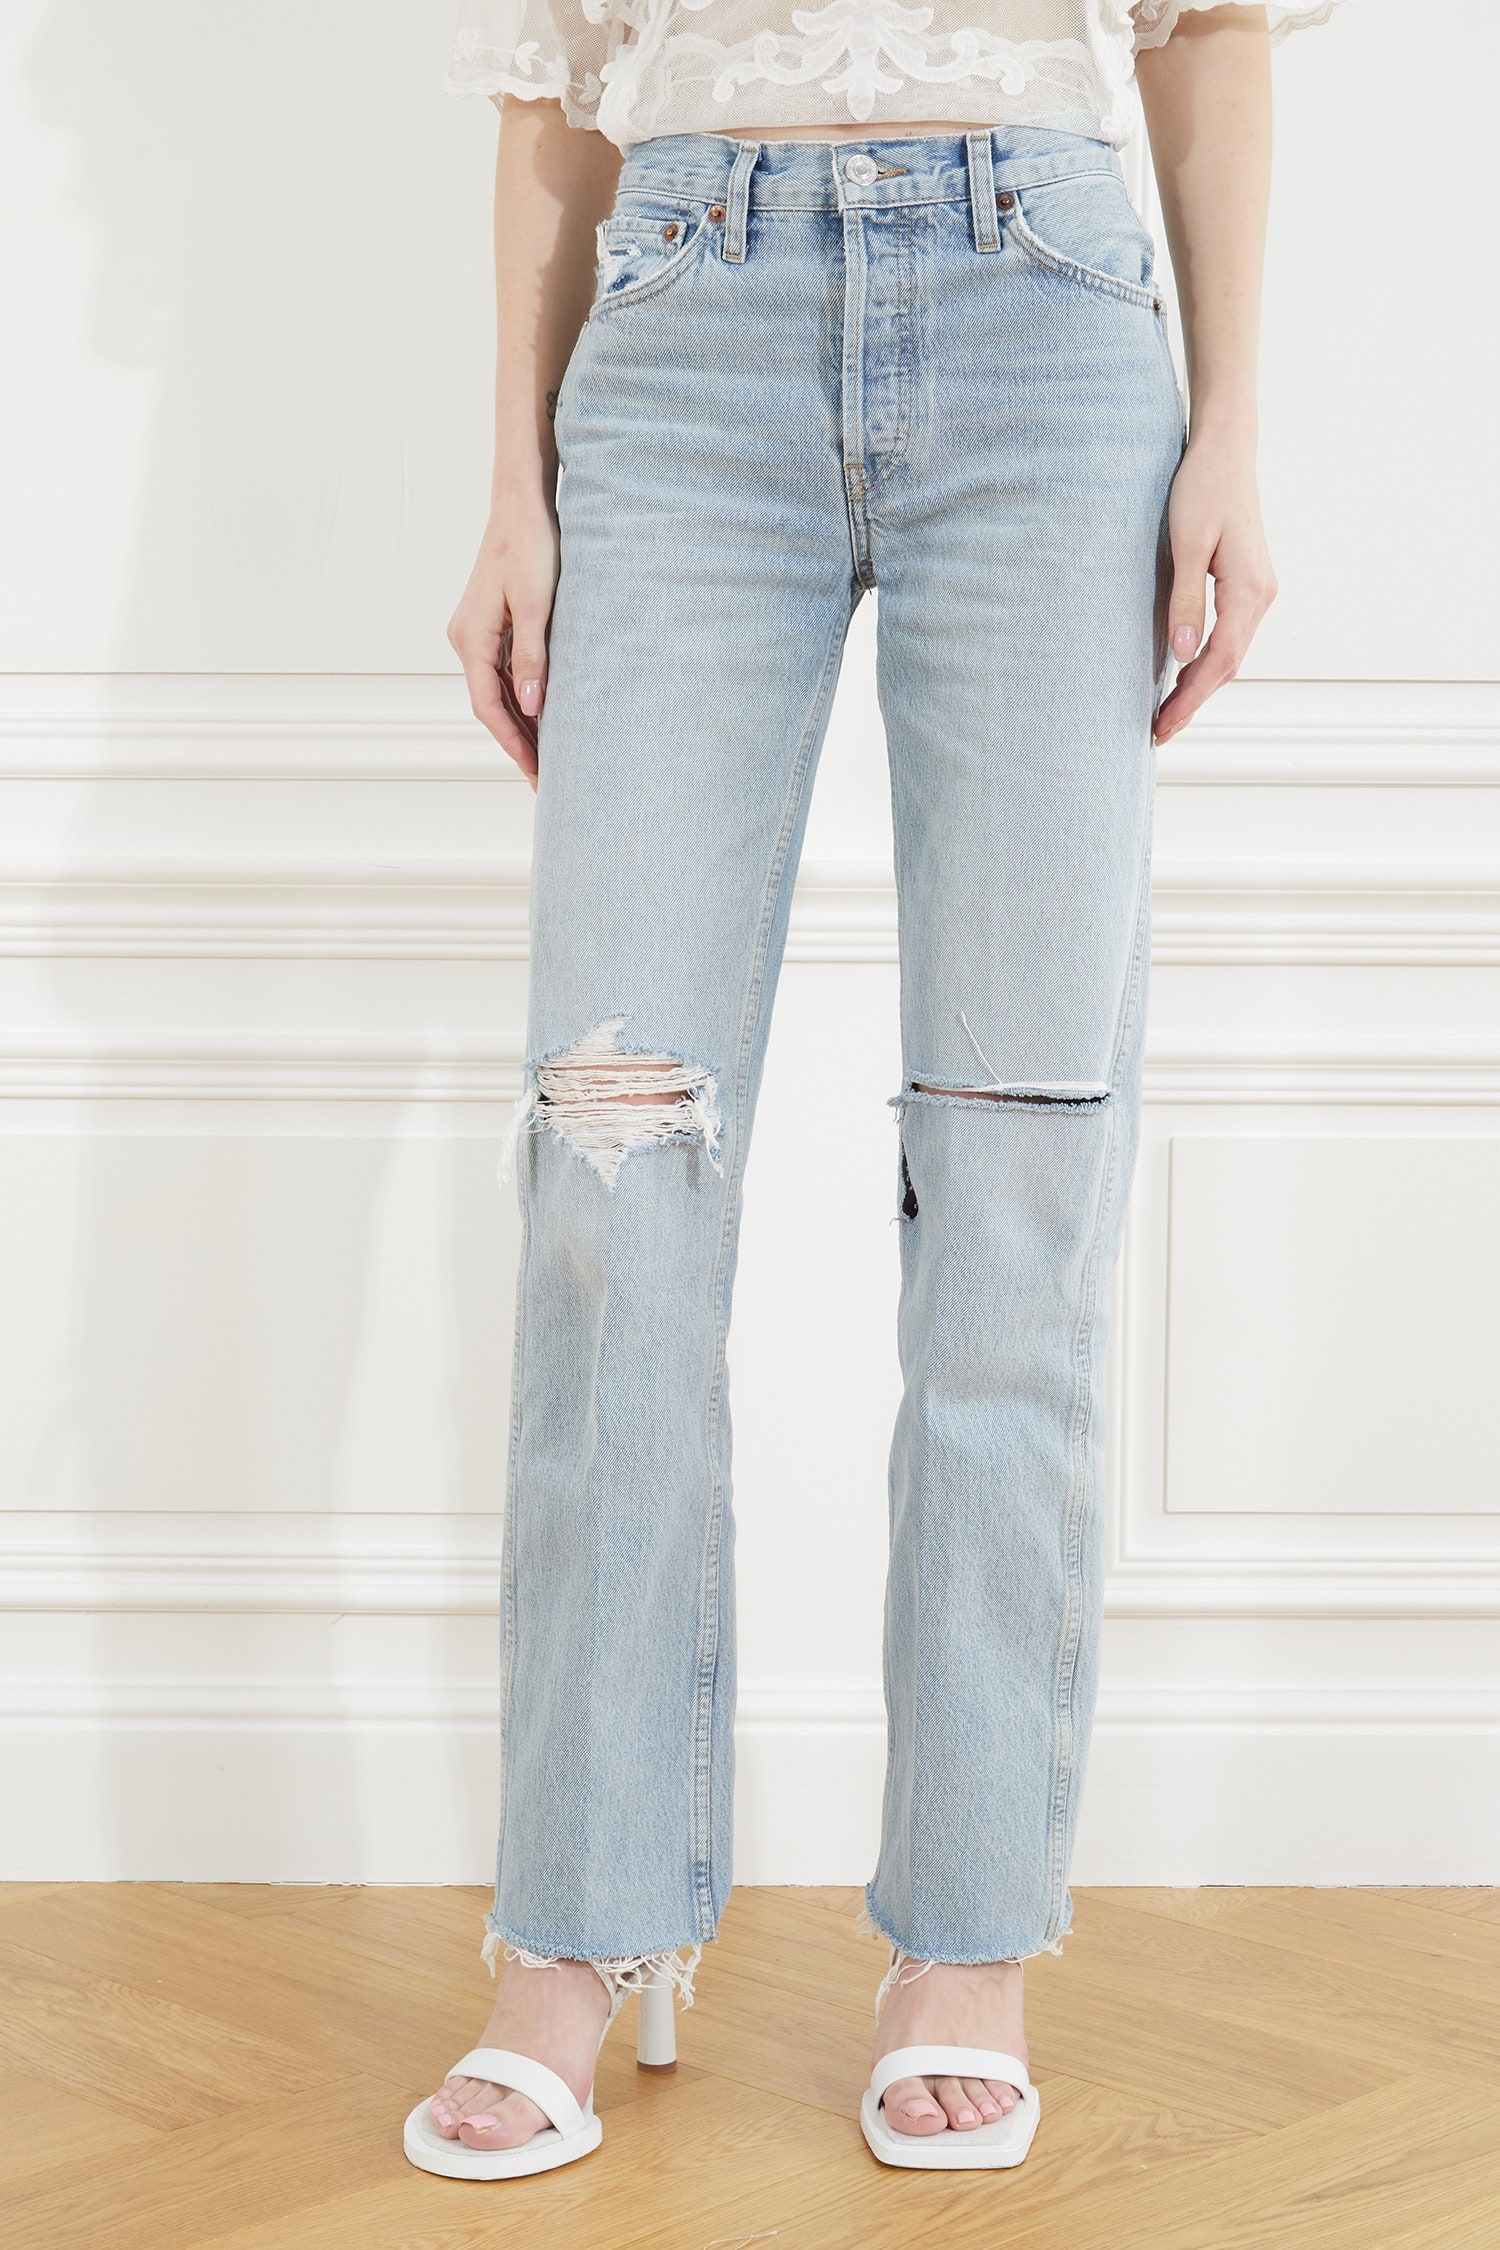 Курт Кобейн вошел в чат рваные джинсы — самые модные весной 2021 года